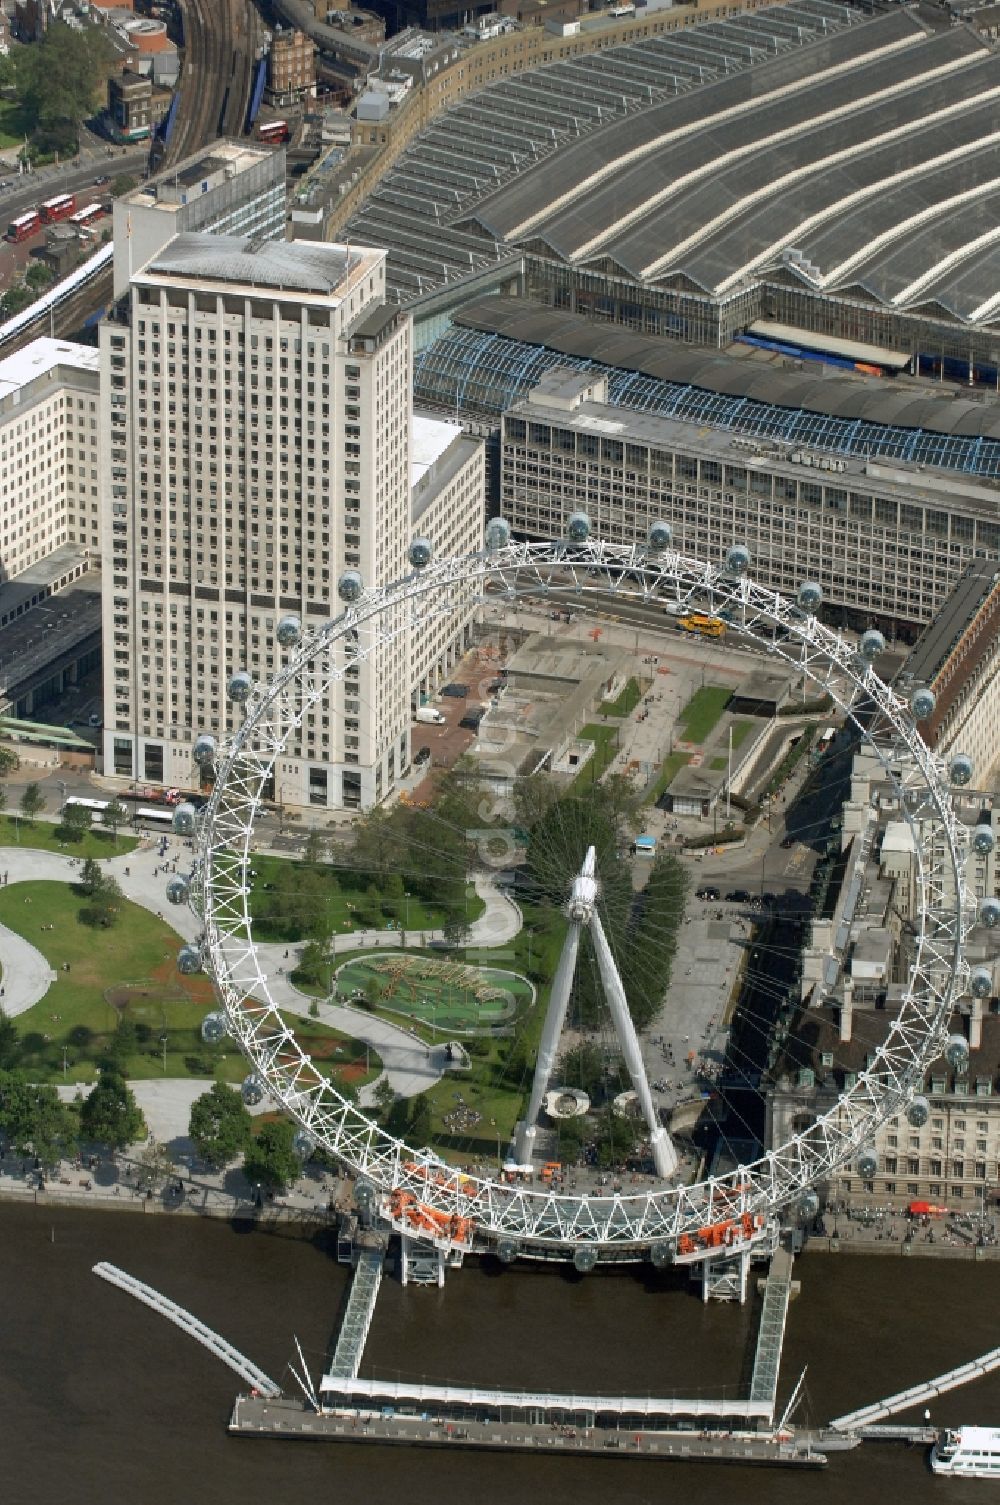 Luftbild London - London EDF Energy London Eye, auch Millennium Wheel genannt - ein Wahrzeichen von London